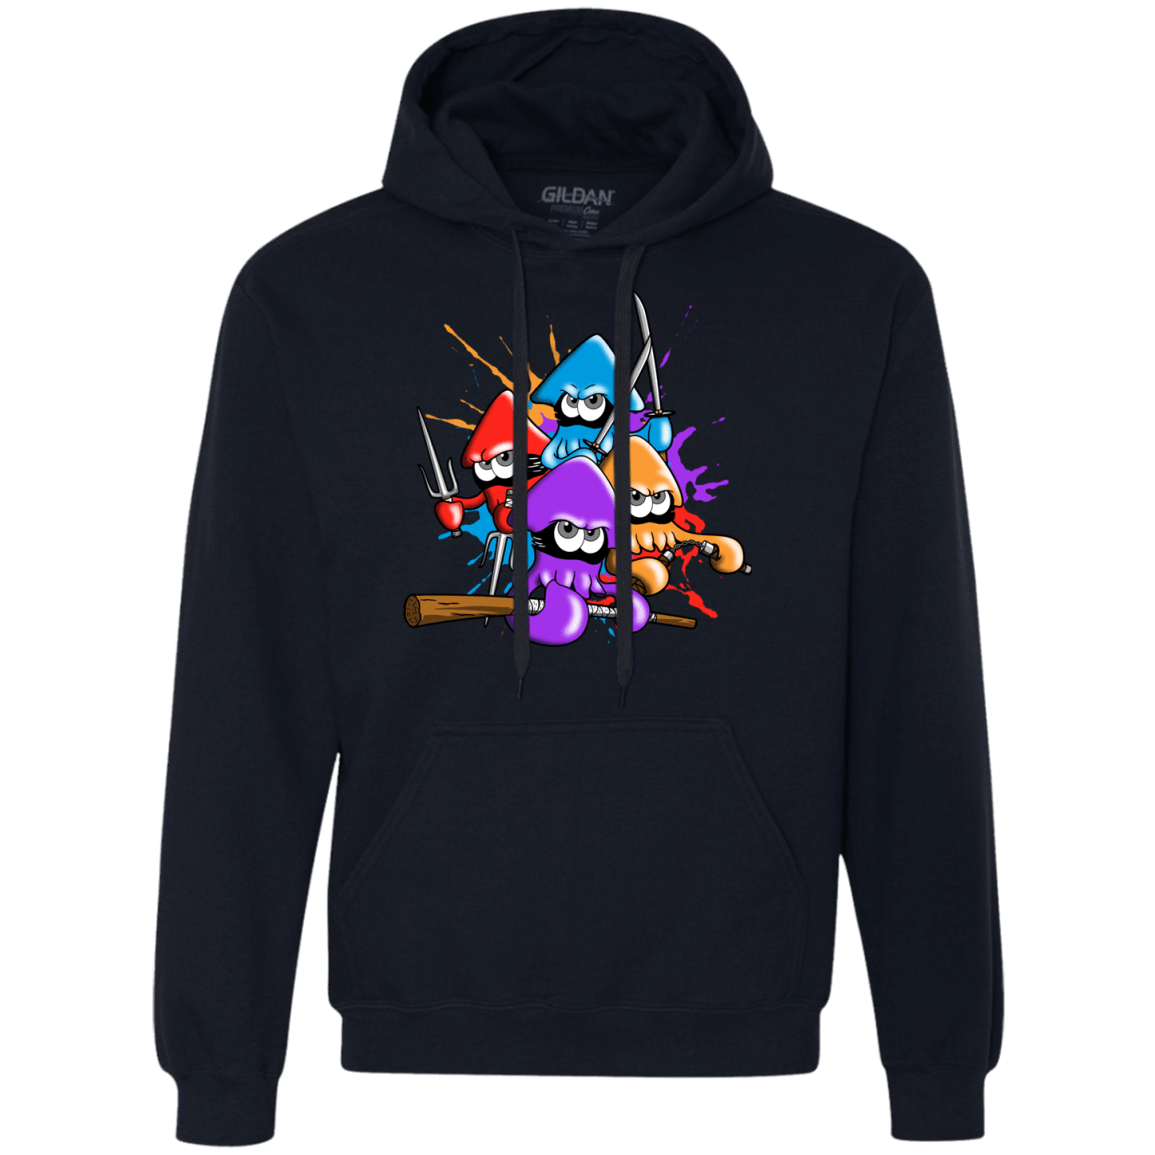 Sweatshirts Navy / S Teenage Mutant Ninja Squids Premium Fleece Hoodie